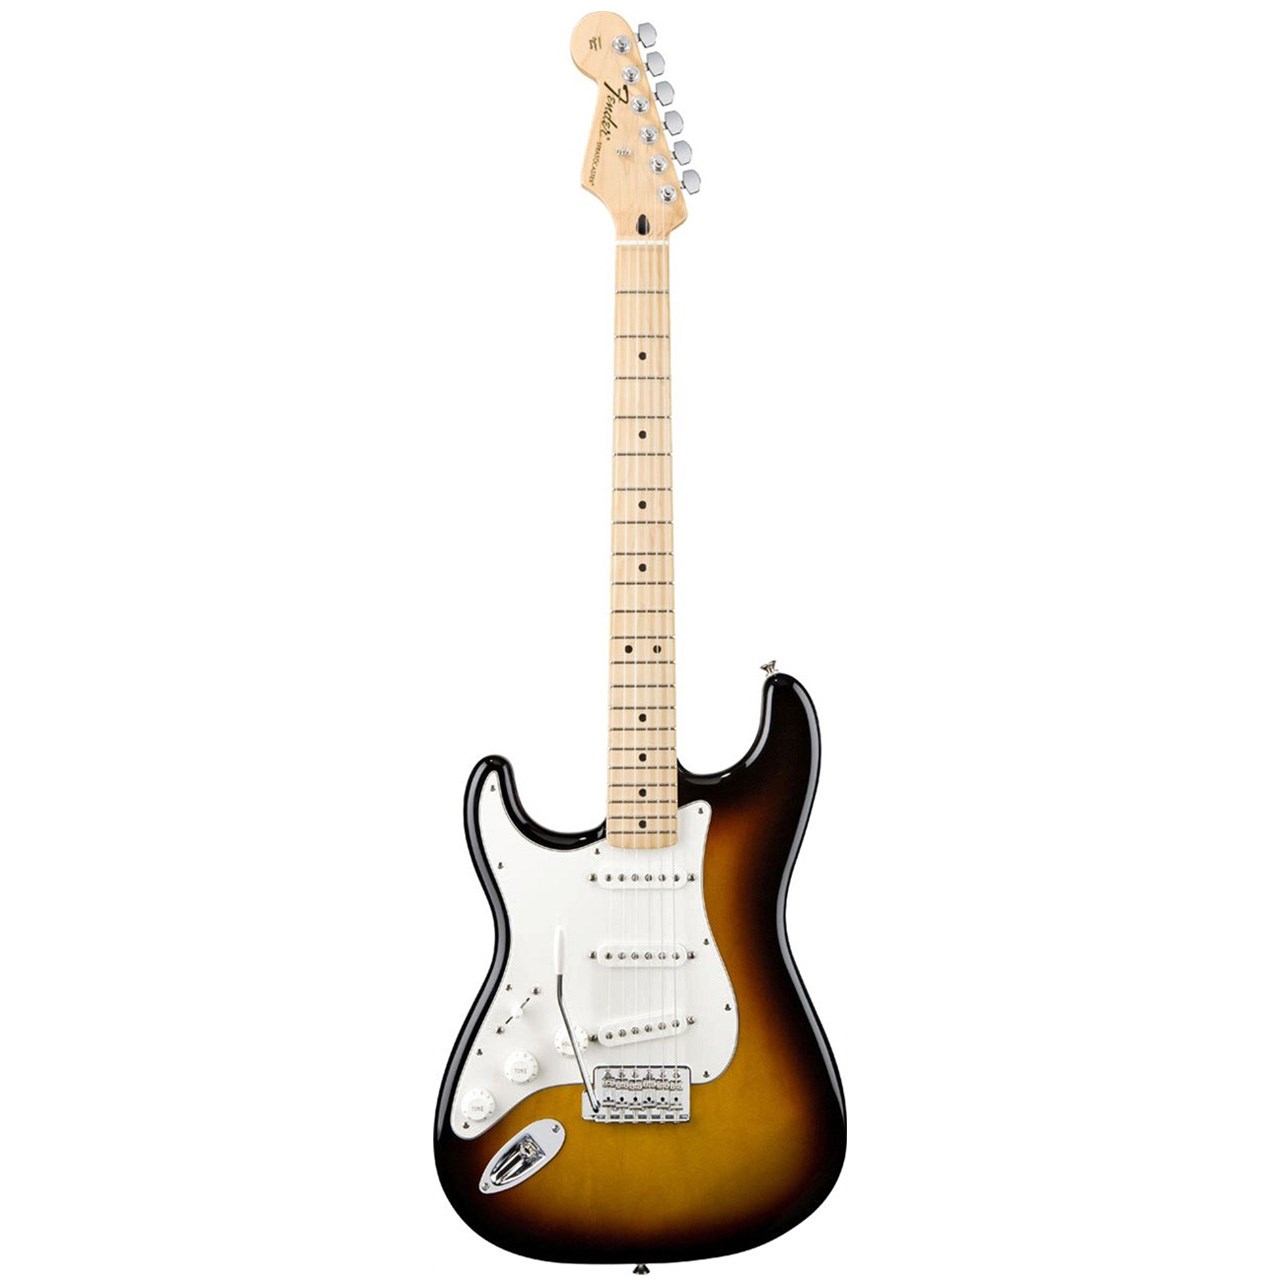 گیتار الکتریک چپ دست فندر مدل Standard Strarocaster 0144622532